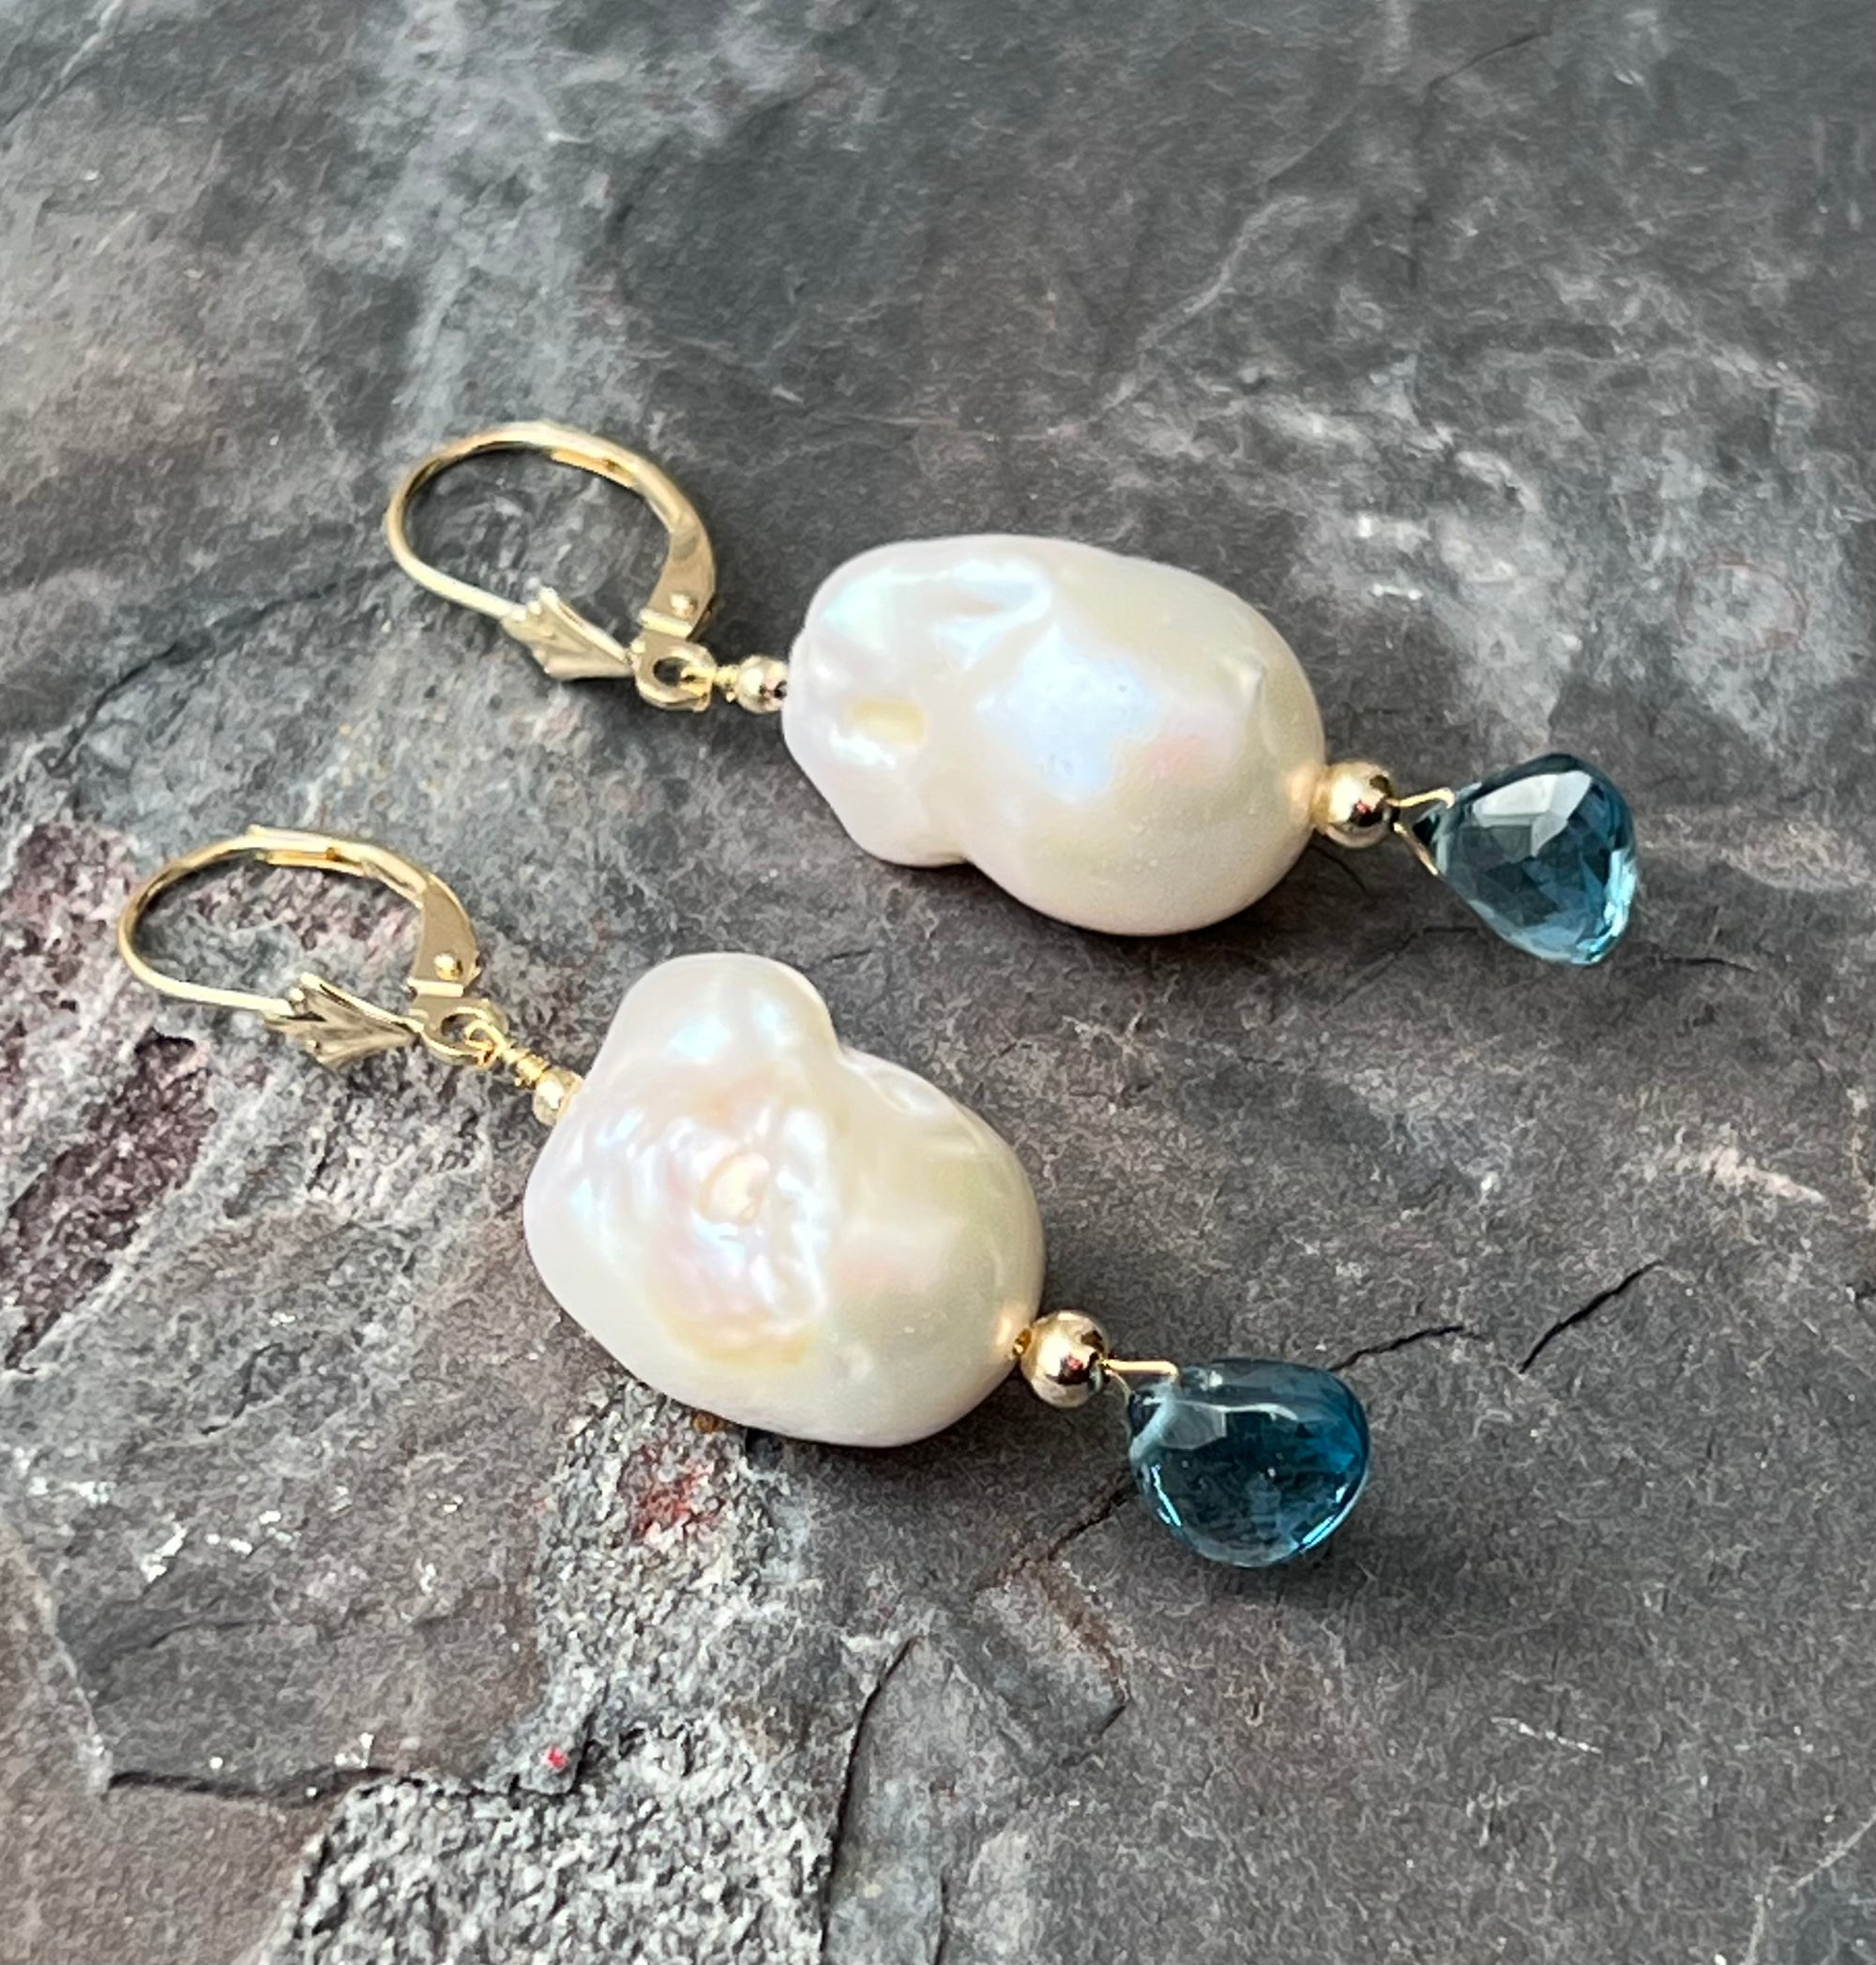 London Blue Baroque Pearl Gold Earrings